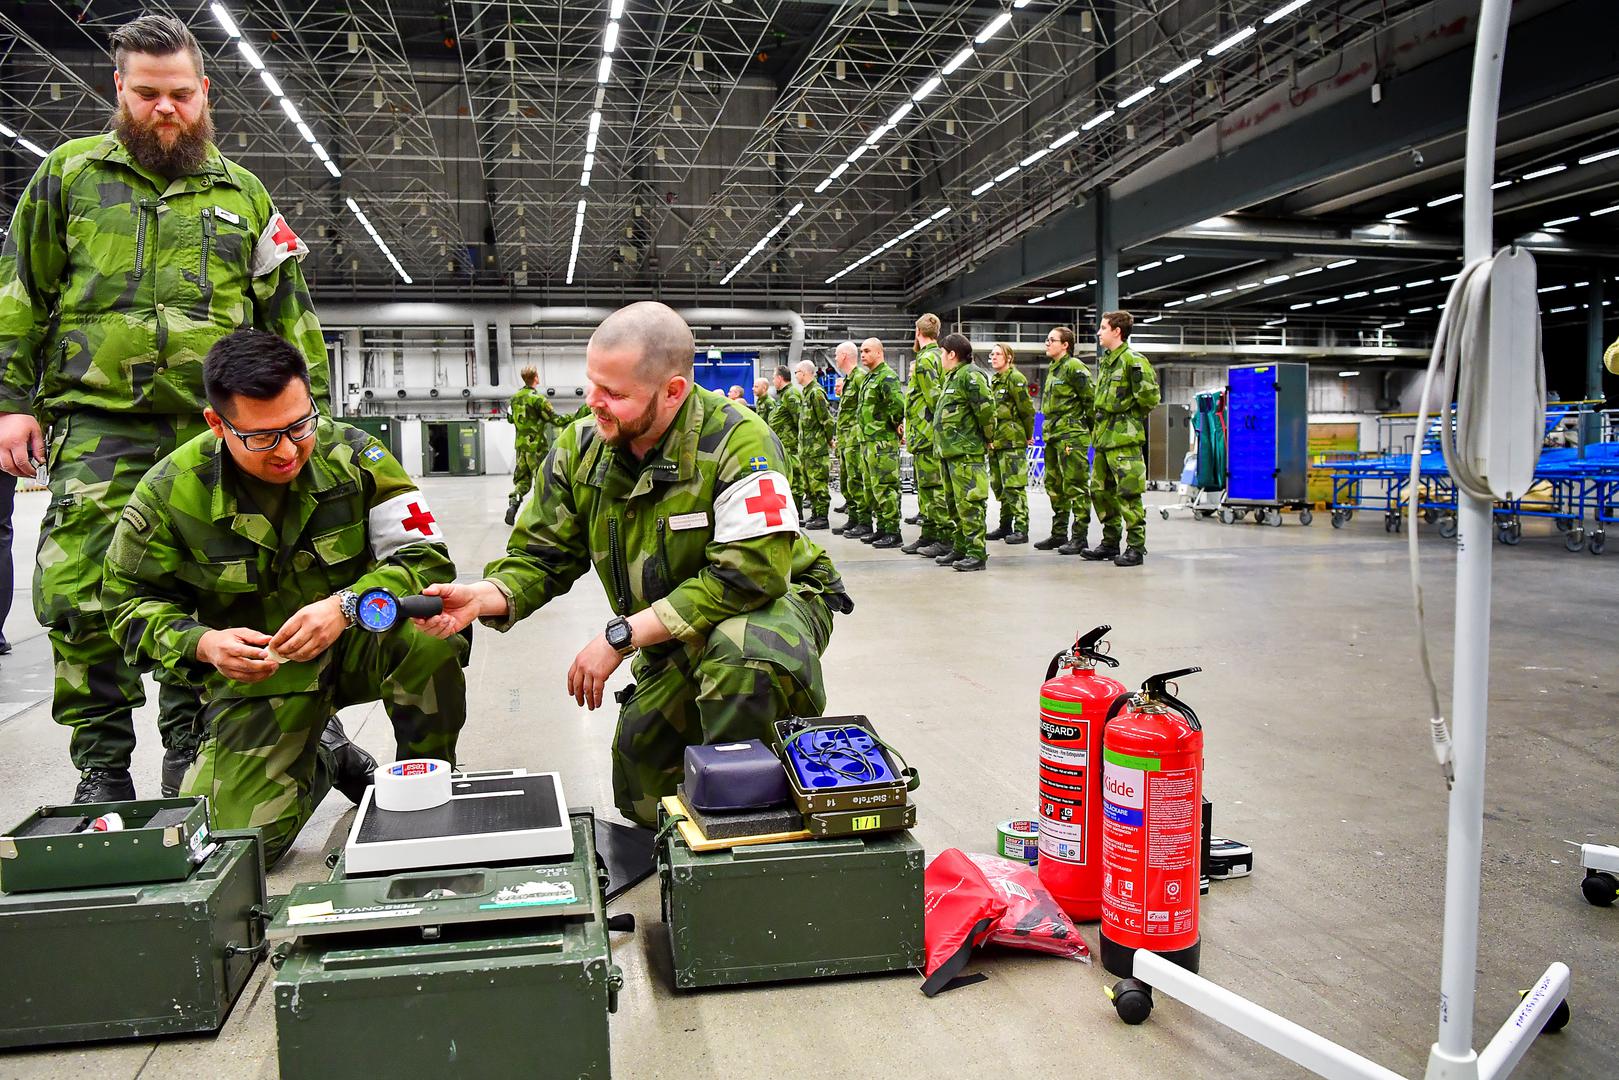 Quân đội Thụy Điển đang xây dựng một bệnh viện dã chiến chống dịch Covid-19 (ảnh: NBC)